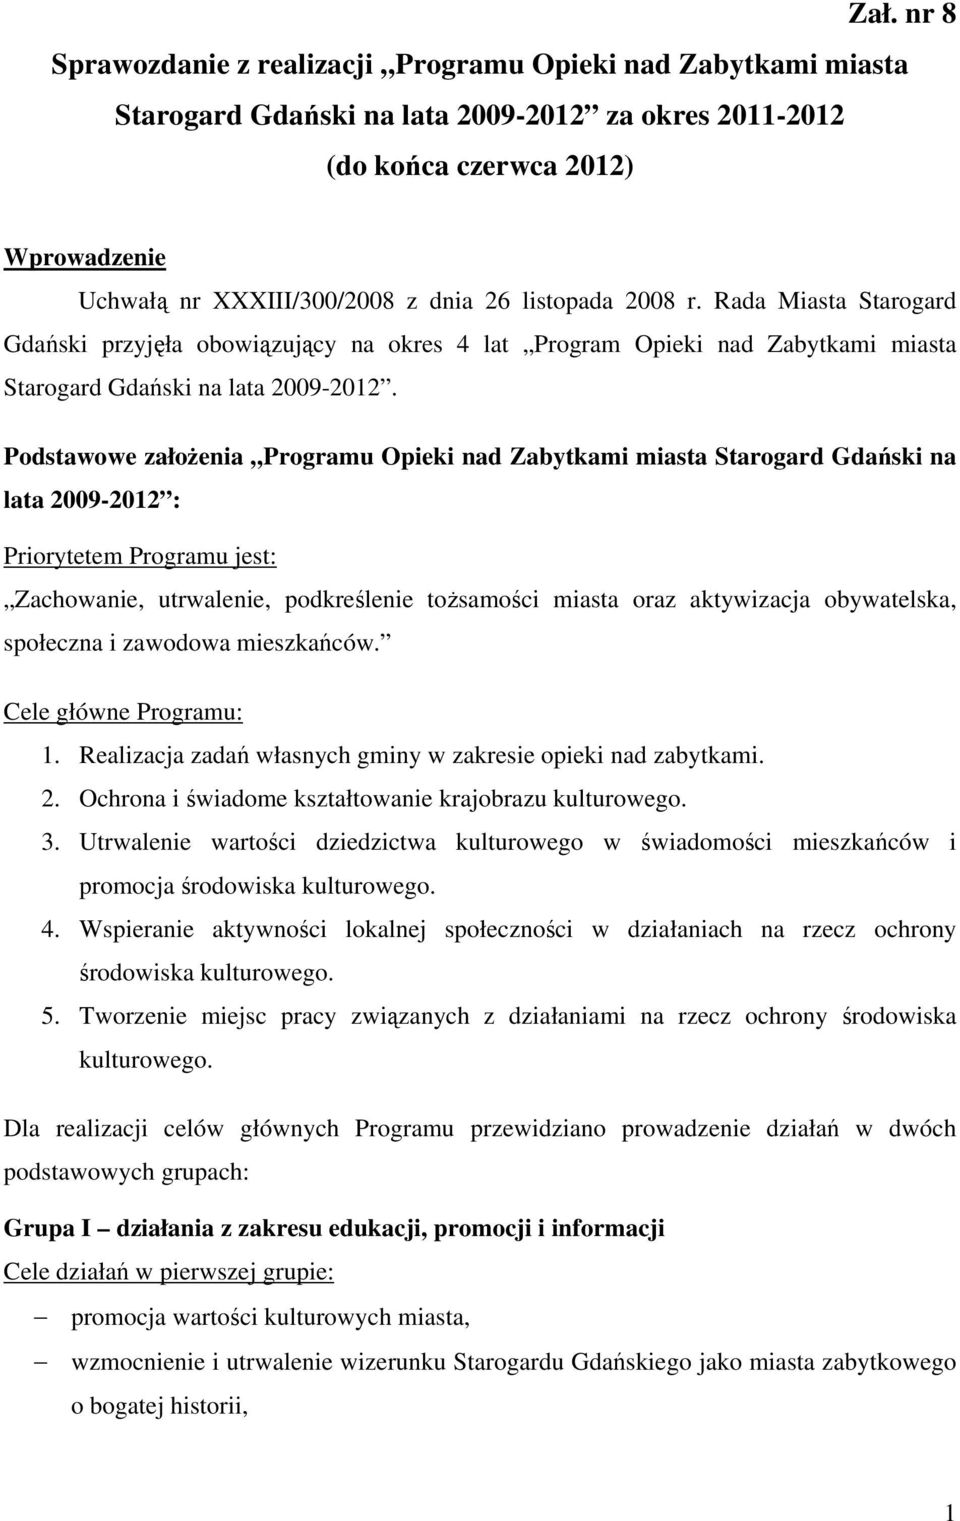 Podstawowe założenia Programu Opieki nad Zabytkami miasta Starogard Gdański na lata 2009-2012 : Priorytetem Programu jest: Zachowanie, utrwalenie, podkreślenie tożsamości miasta oraz aktywizacja